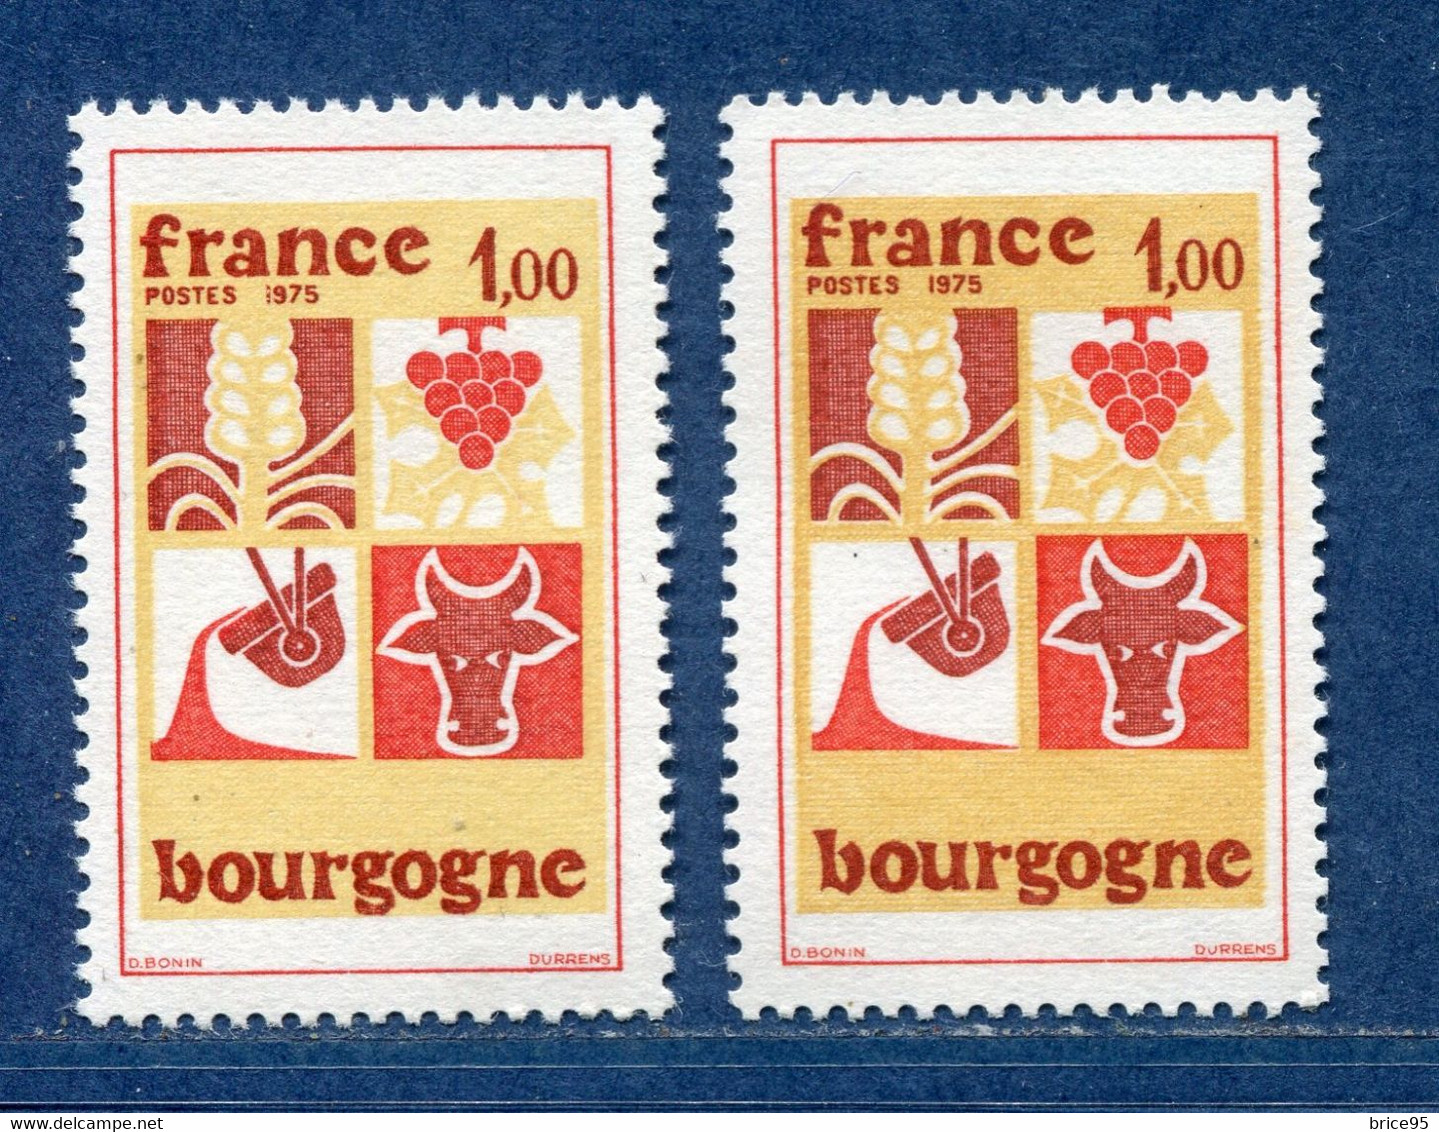 ⭐ France - Variété - YT N° 1848 - Couleurs - Pétouille - Neuf Sans Charnière - 1975 ⭐ - Neufs